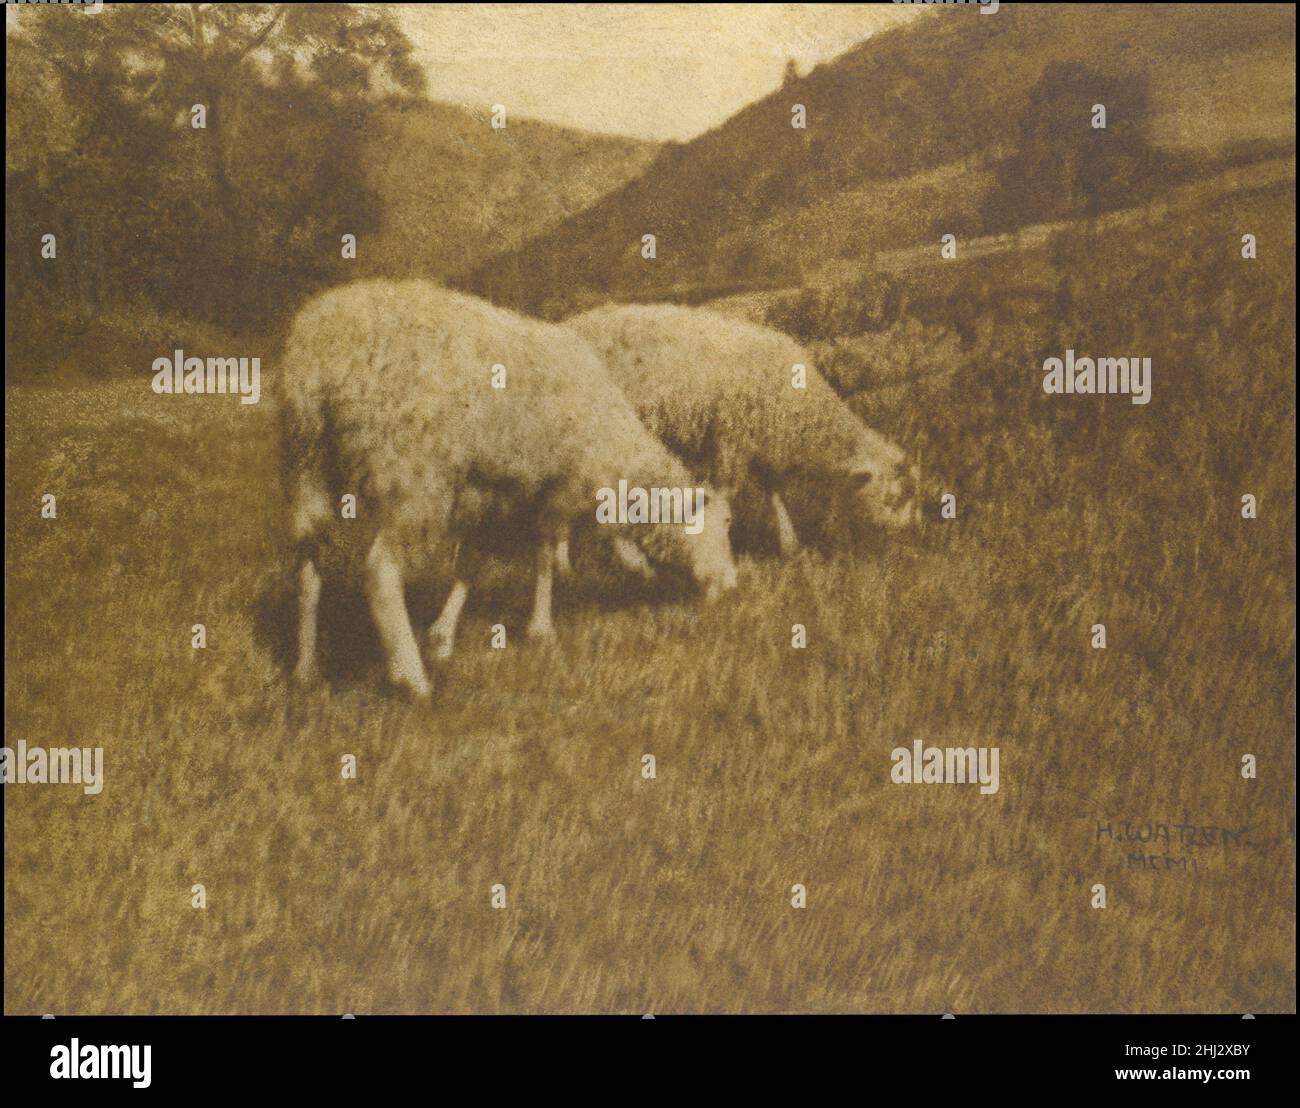 Sheep 1901 Hans Watzek Austrian dans des photographies telles que cette charmante image pastorale des moutons de pâturage, Watzek a démontré pourquoi il est considéré comme un membre de la Secession photographique de Vienne (connue sous le nom de Das Kleeblatt).Il est composé de manière experte, équilibré mais pas symétrique comme prévu, avec un subtil mélange de forme réticulée dans l'herbe de premier plan qui tire pleinement parti des capacités tonales de la photographie.Sa formation de dessinateur a sans aucun doute aidé ses choix esthétiques et lui a enseigné à identifier des scènes extérieures intrigantes à l'oeil.Parmi ceux qui ont reconnu son talent, on compte Alfred Stiegl Banque D'Images